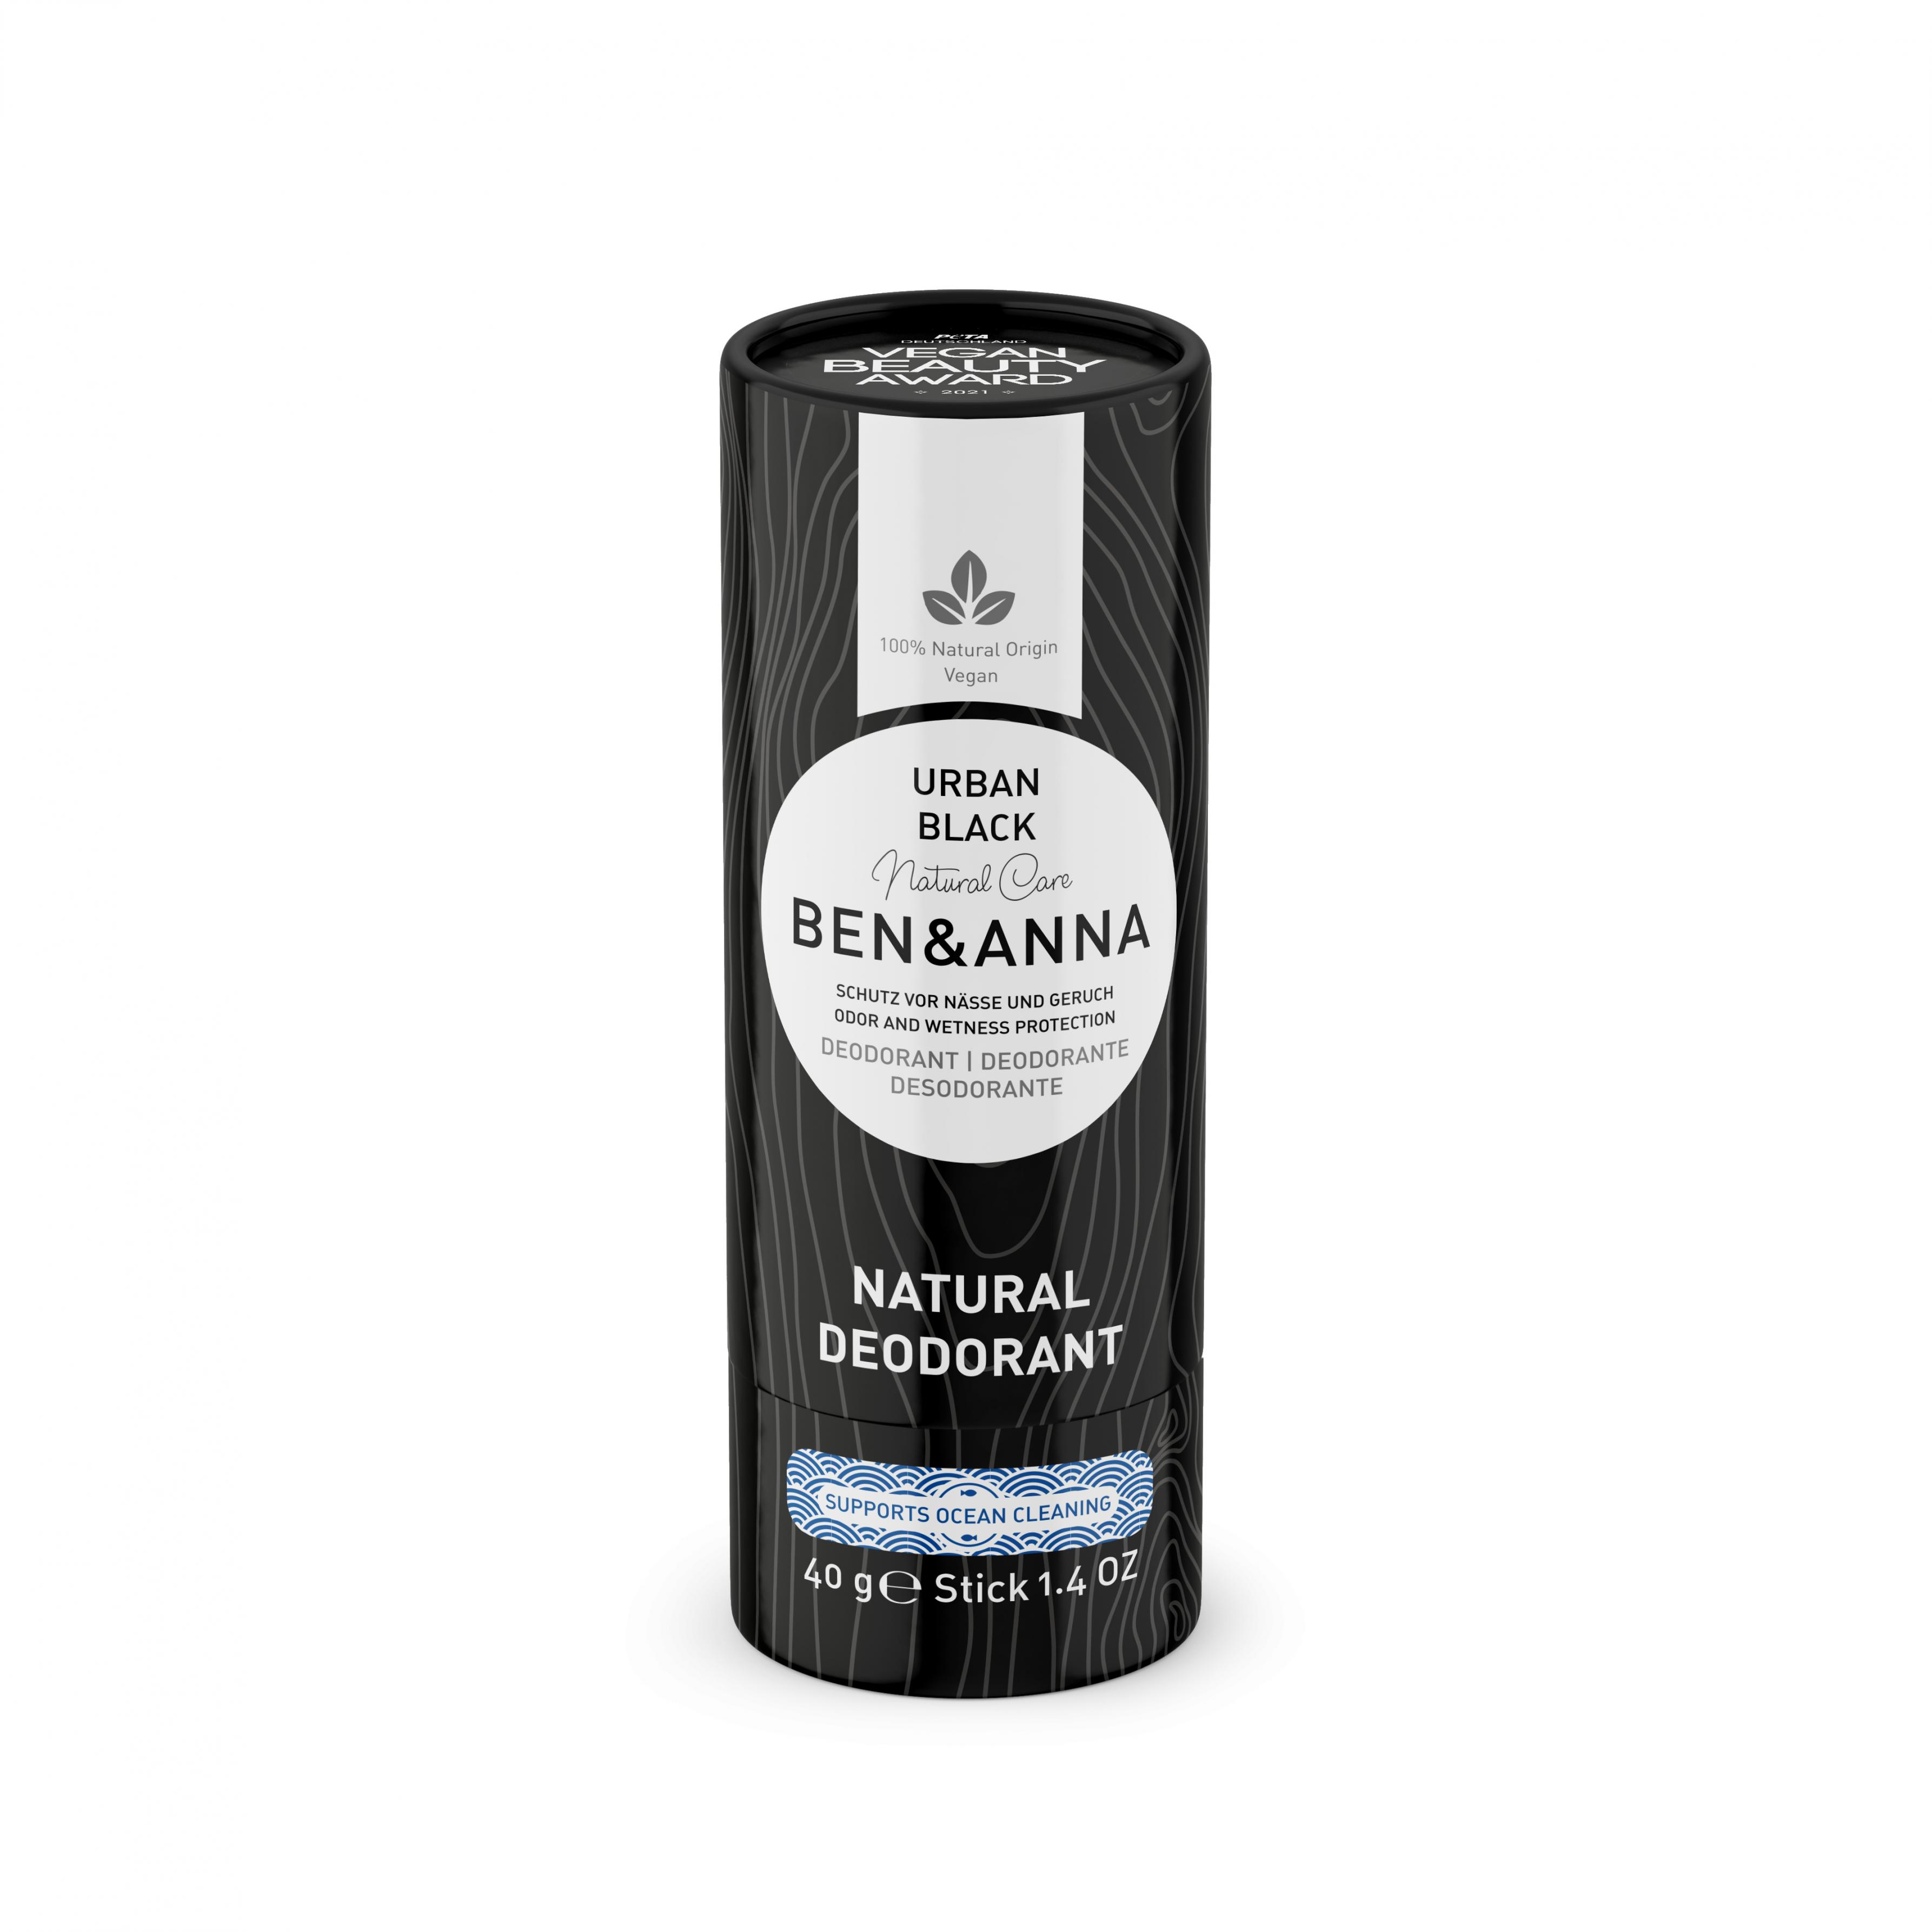 Natural Deodorant Urban Black 40g